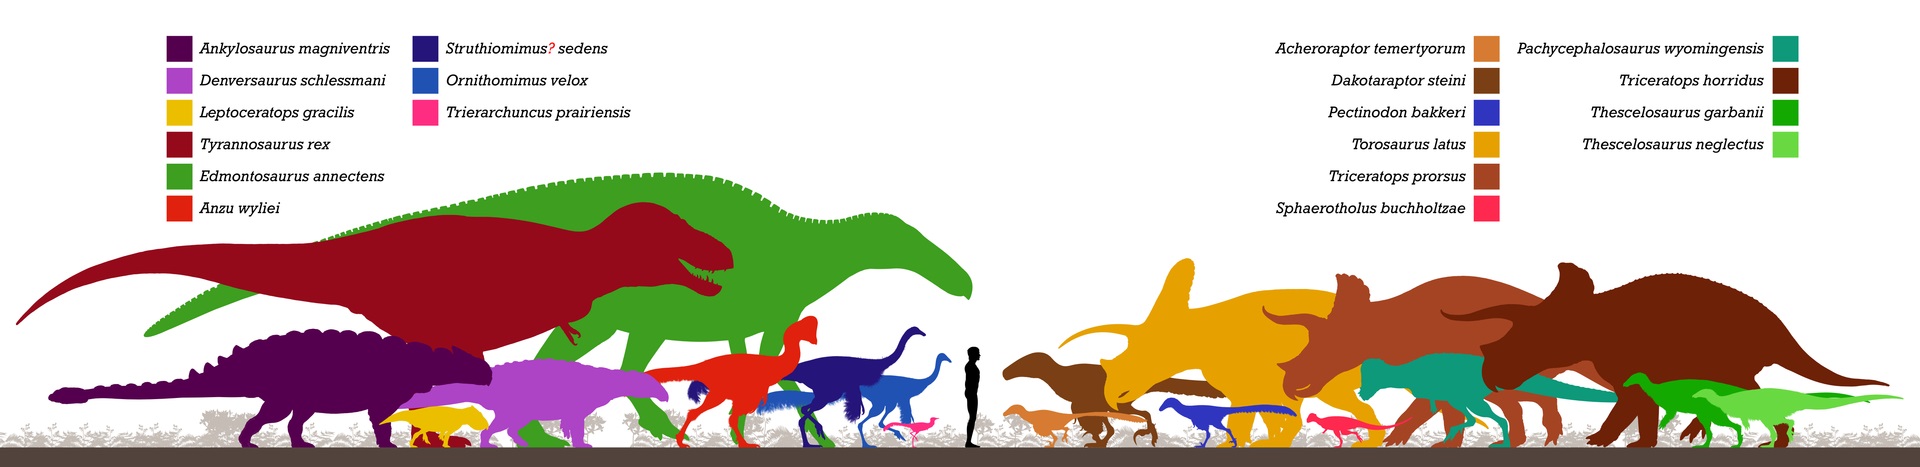 Schematický přehled zástupců dinosauří megafauny v ekosystémech souvrství Hell Creek. V současnosti známe přinejmenším 23 rodů neptačích dinosaurů, náležejících právě k těmto ekosystémům z posledních 1,2 až 2 milionů let křídové periody. Kredit: Pale